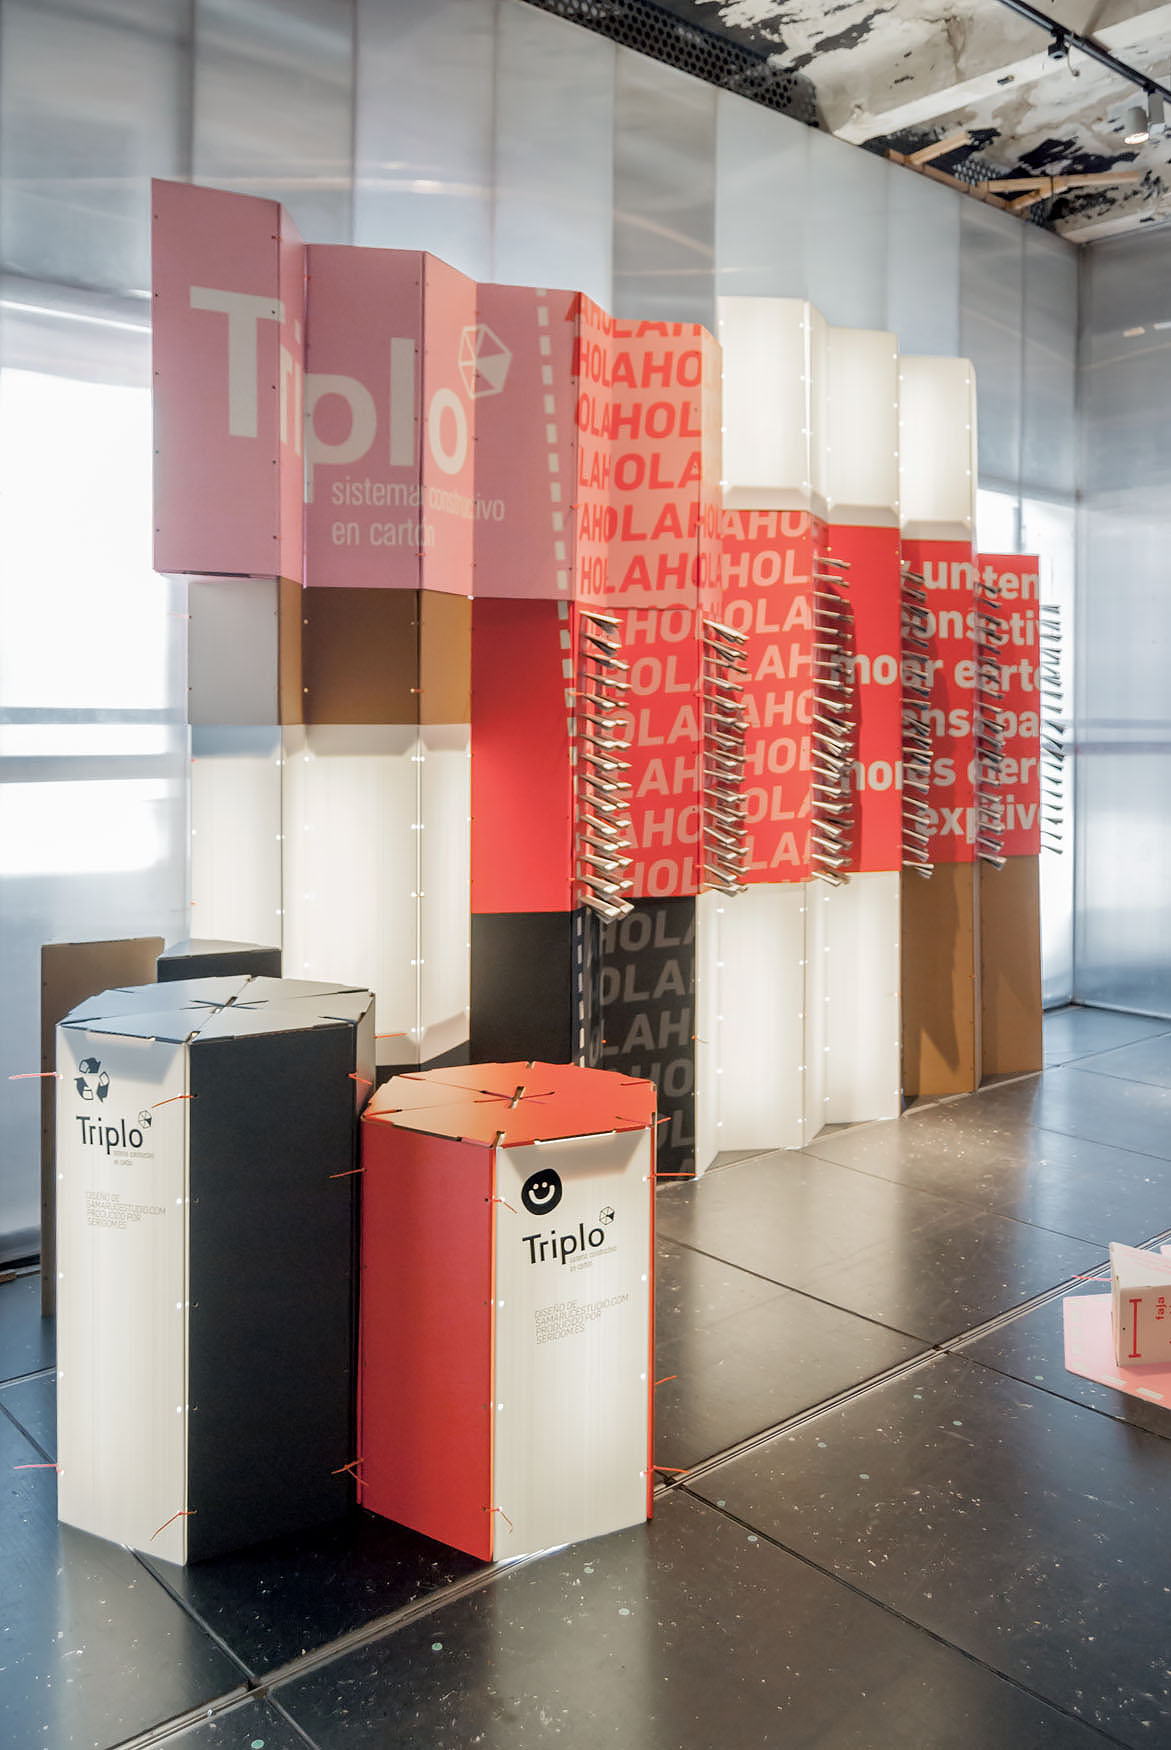 Proyecto de participación con sistema Triplo* en la exposición Love Cartón de Matadero Madrid DIMAD 2018